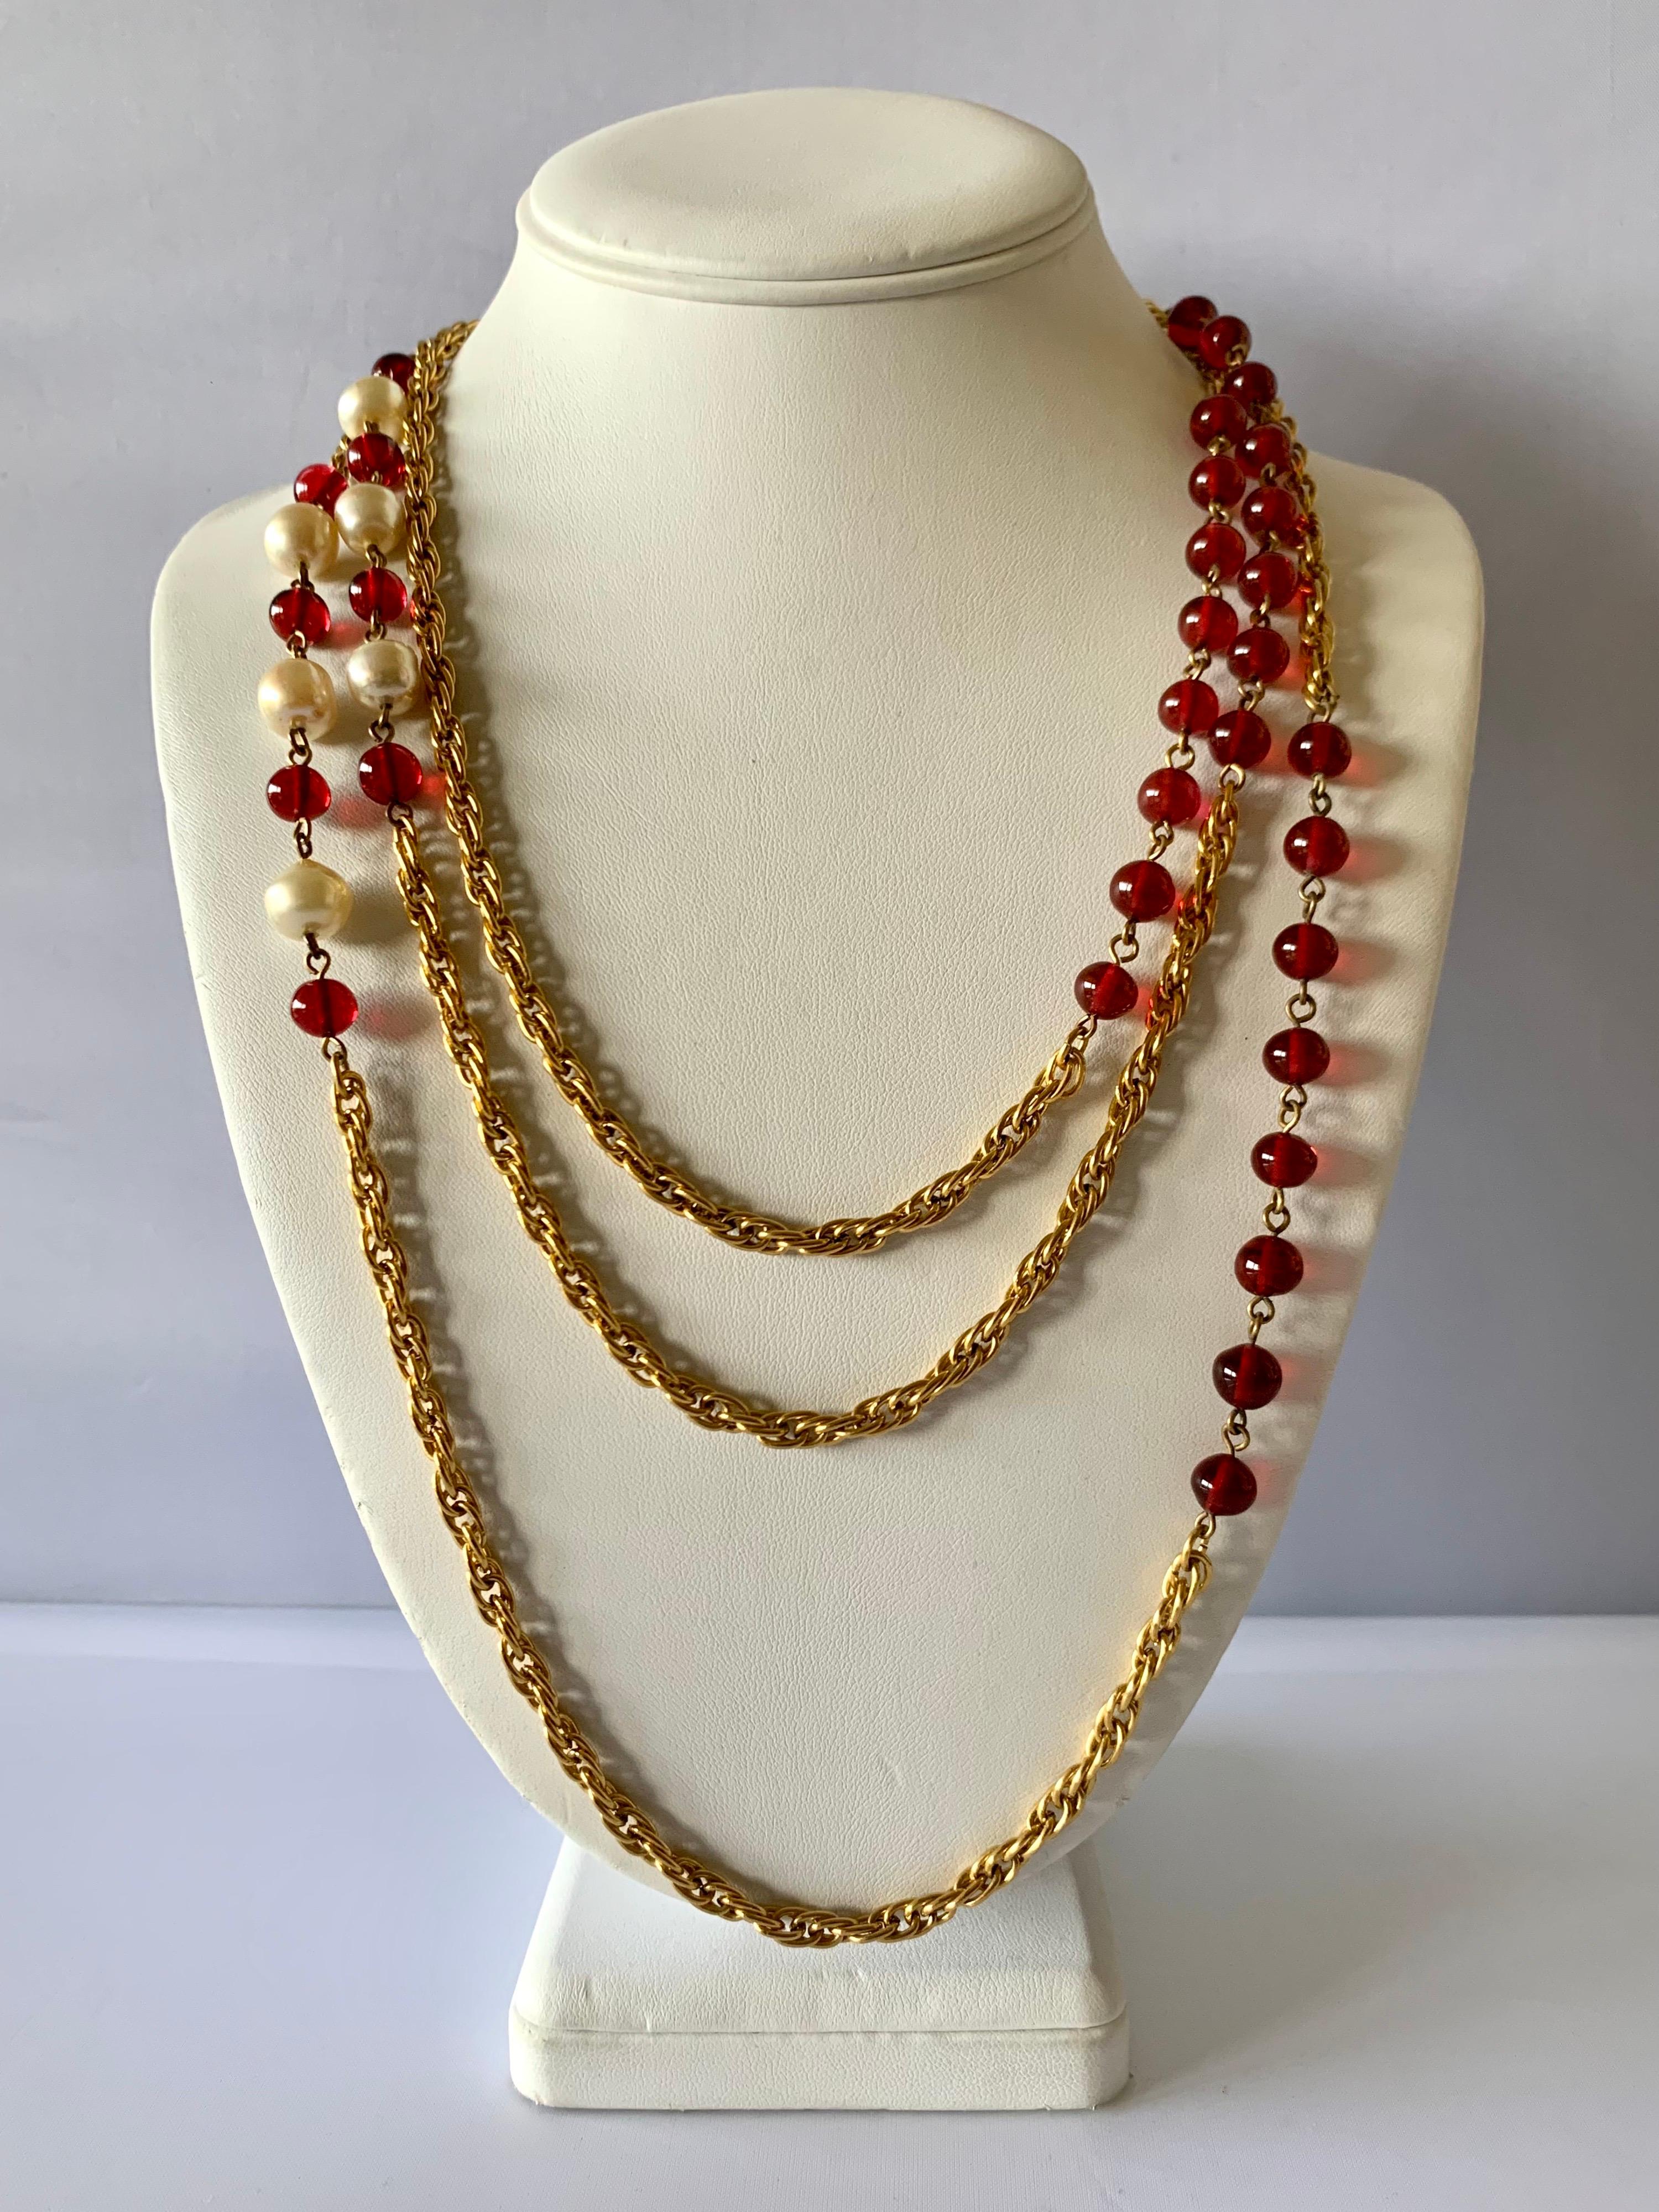 Collier sautoir Chanel vintage difficile à trouver, composé en métal doré et orné de perles de verre et de perles en verre coulé rouge 